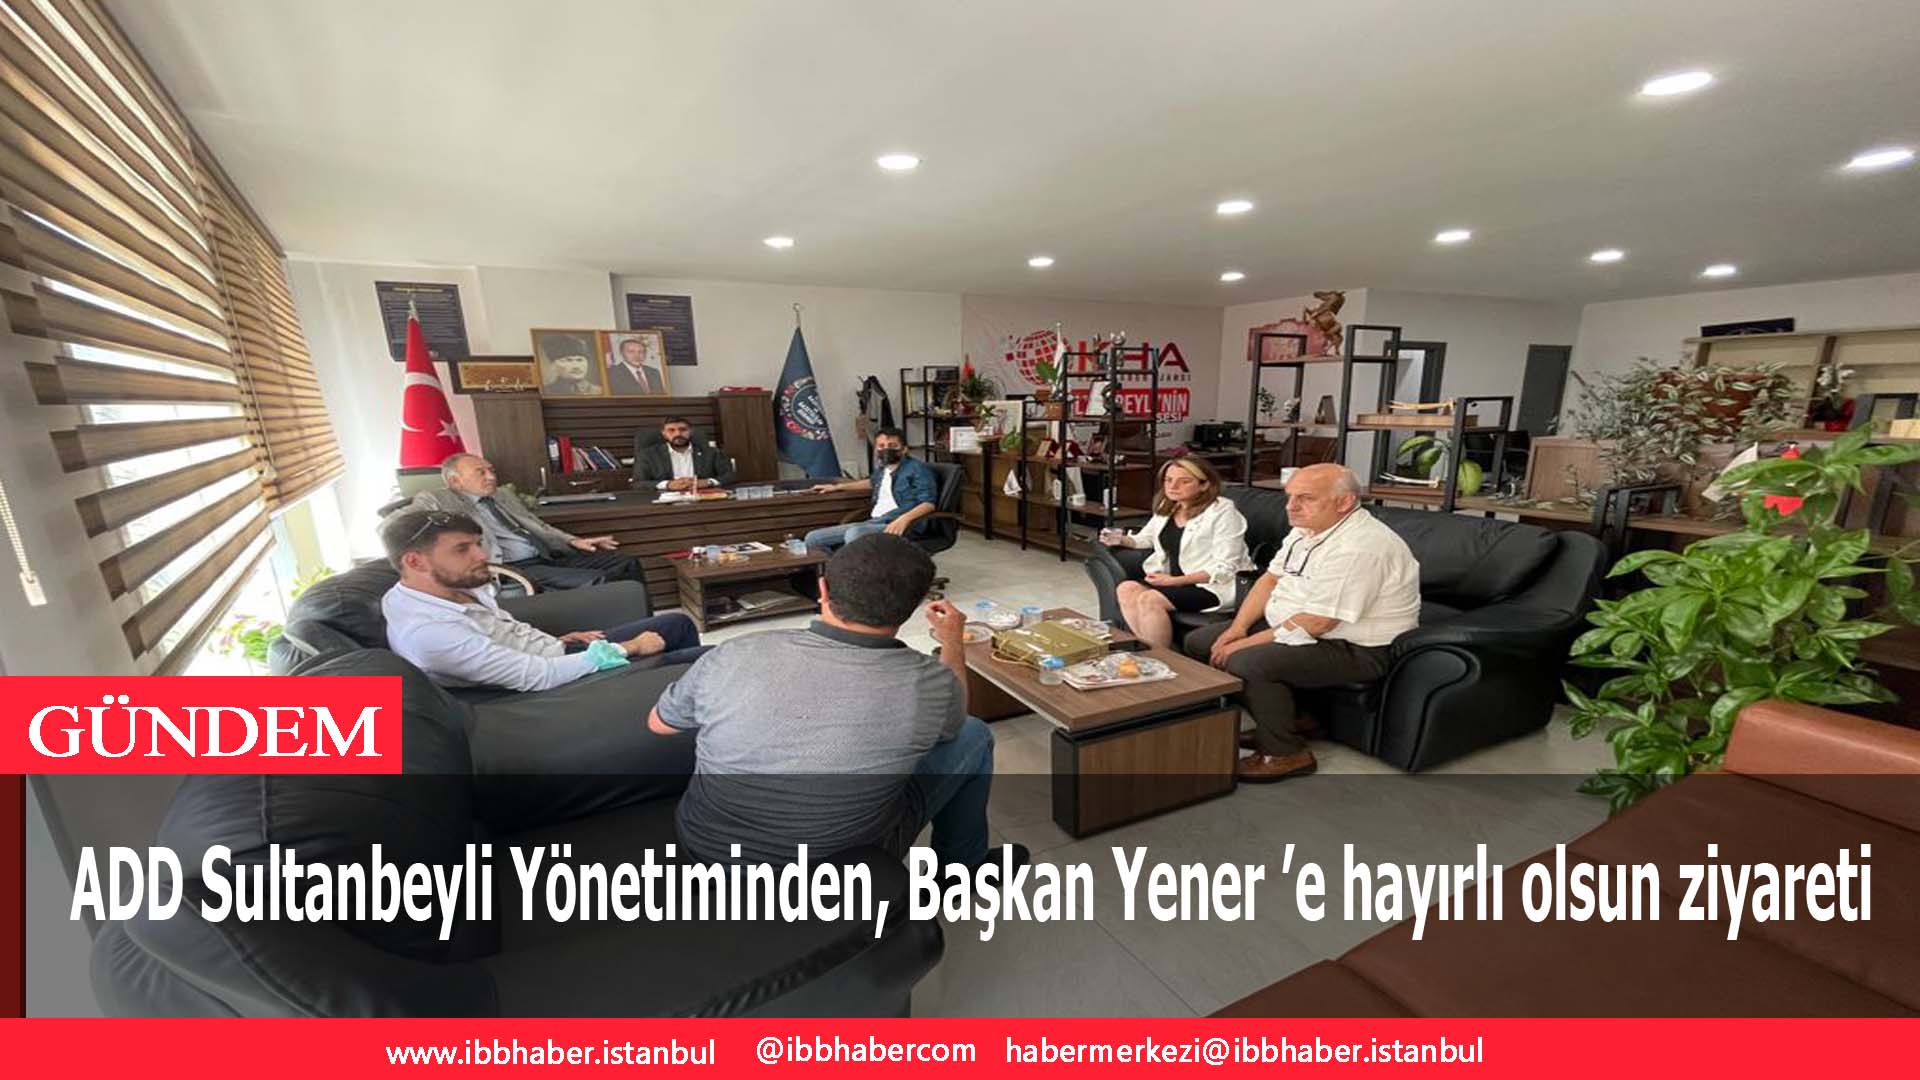 ADD Sultanbeyli Yönetiminden, Başkan Yener ’e hayırlı olsun ziyareti